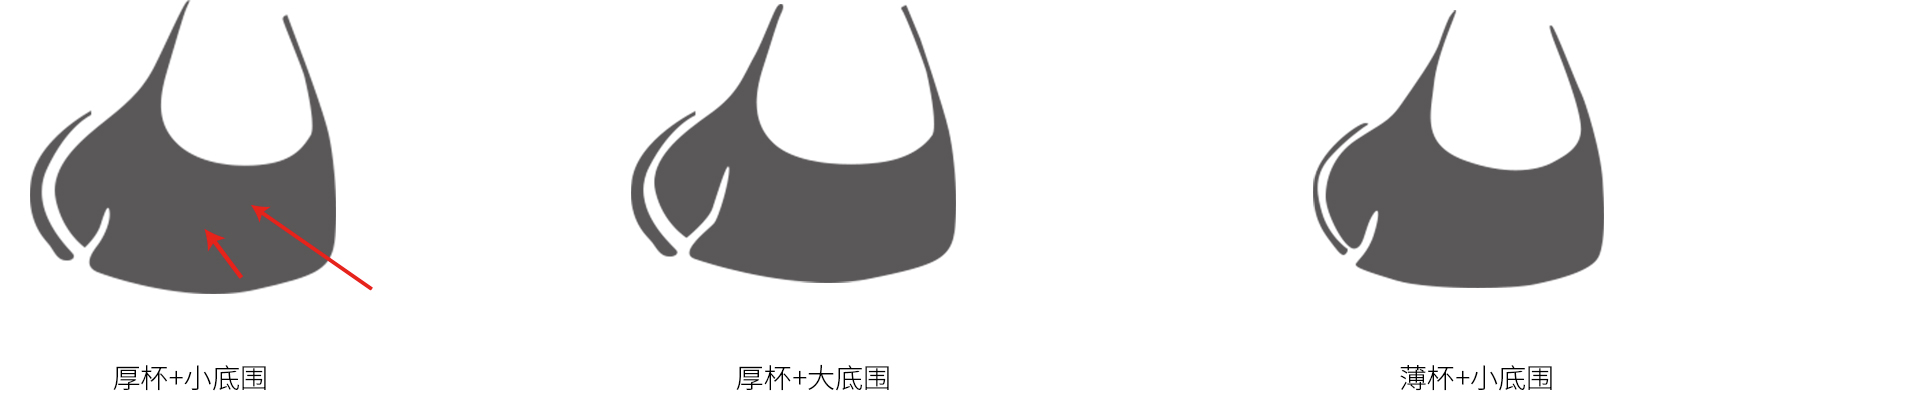 锁春内衣文化-80%的中国女性都穿错内衣_06.jpg